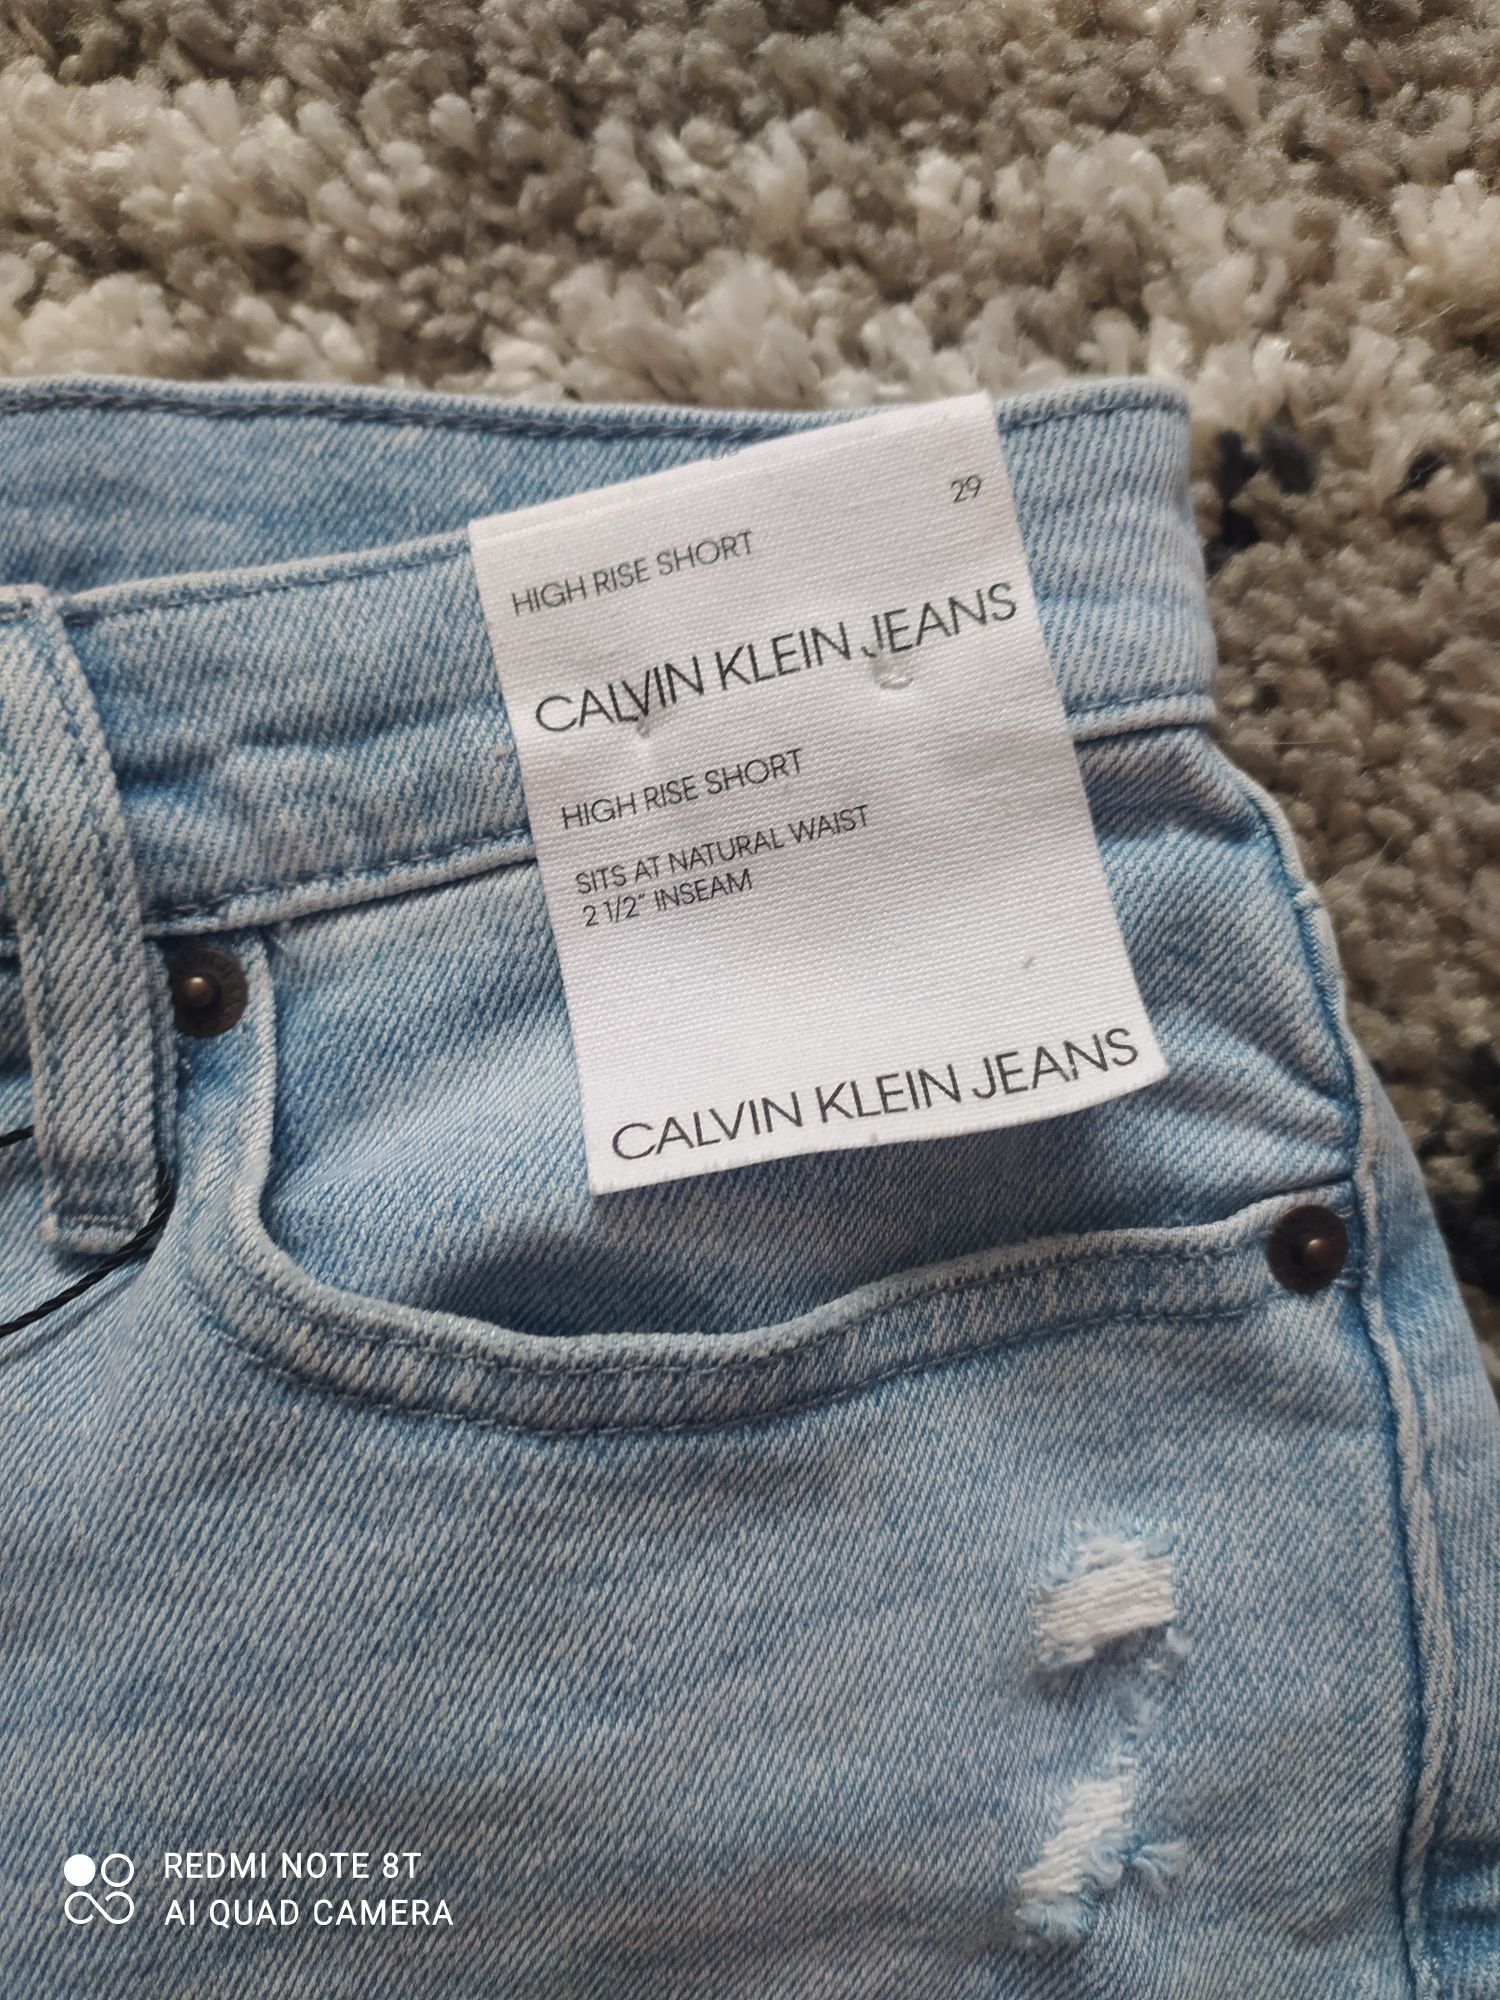 Джинсовые шорты, шорты Calvin Klein оригинал 29 р-р